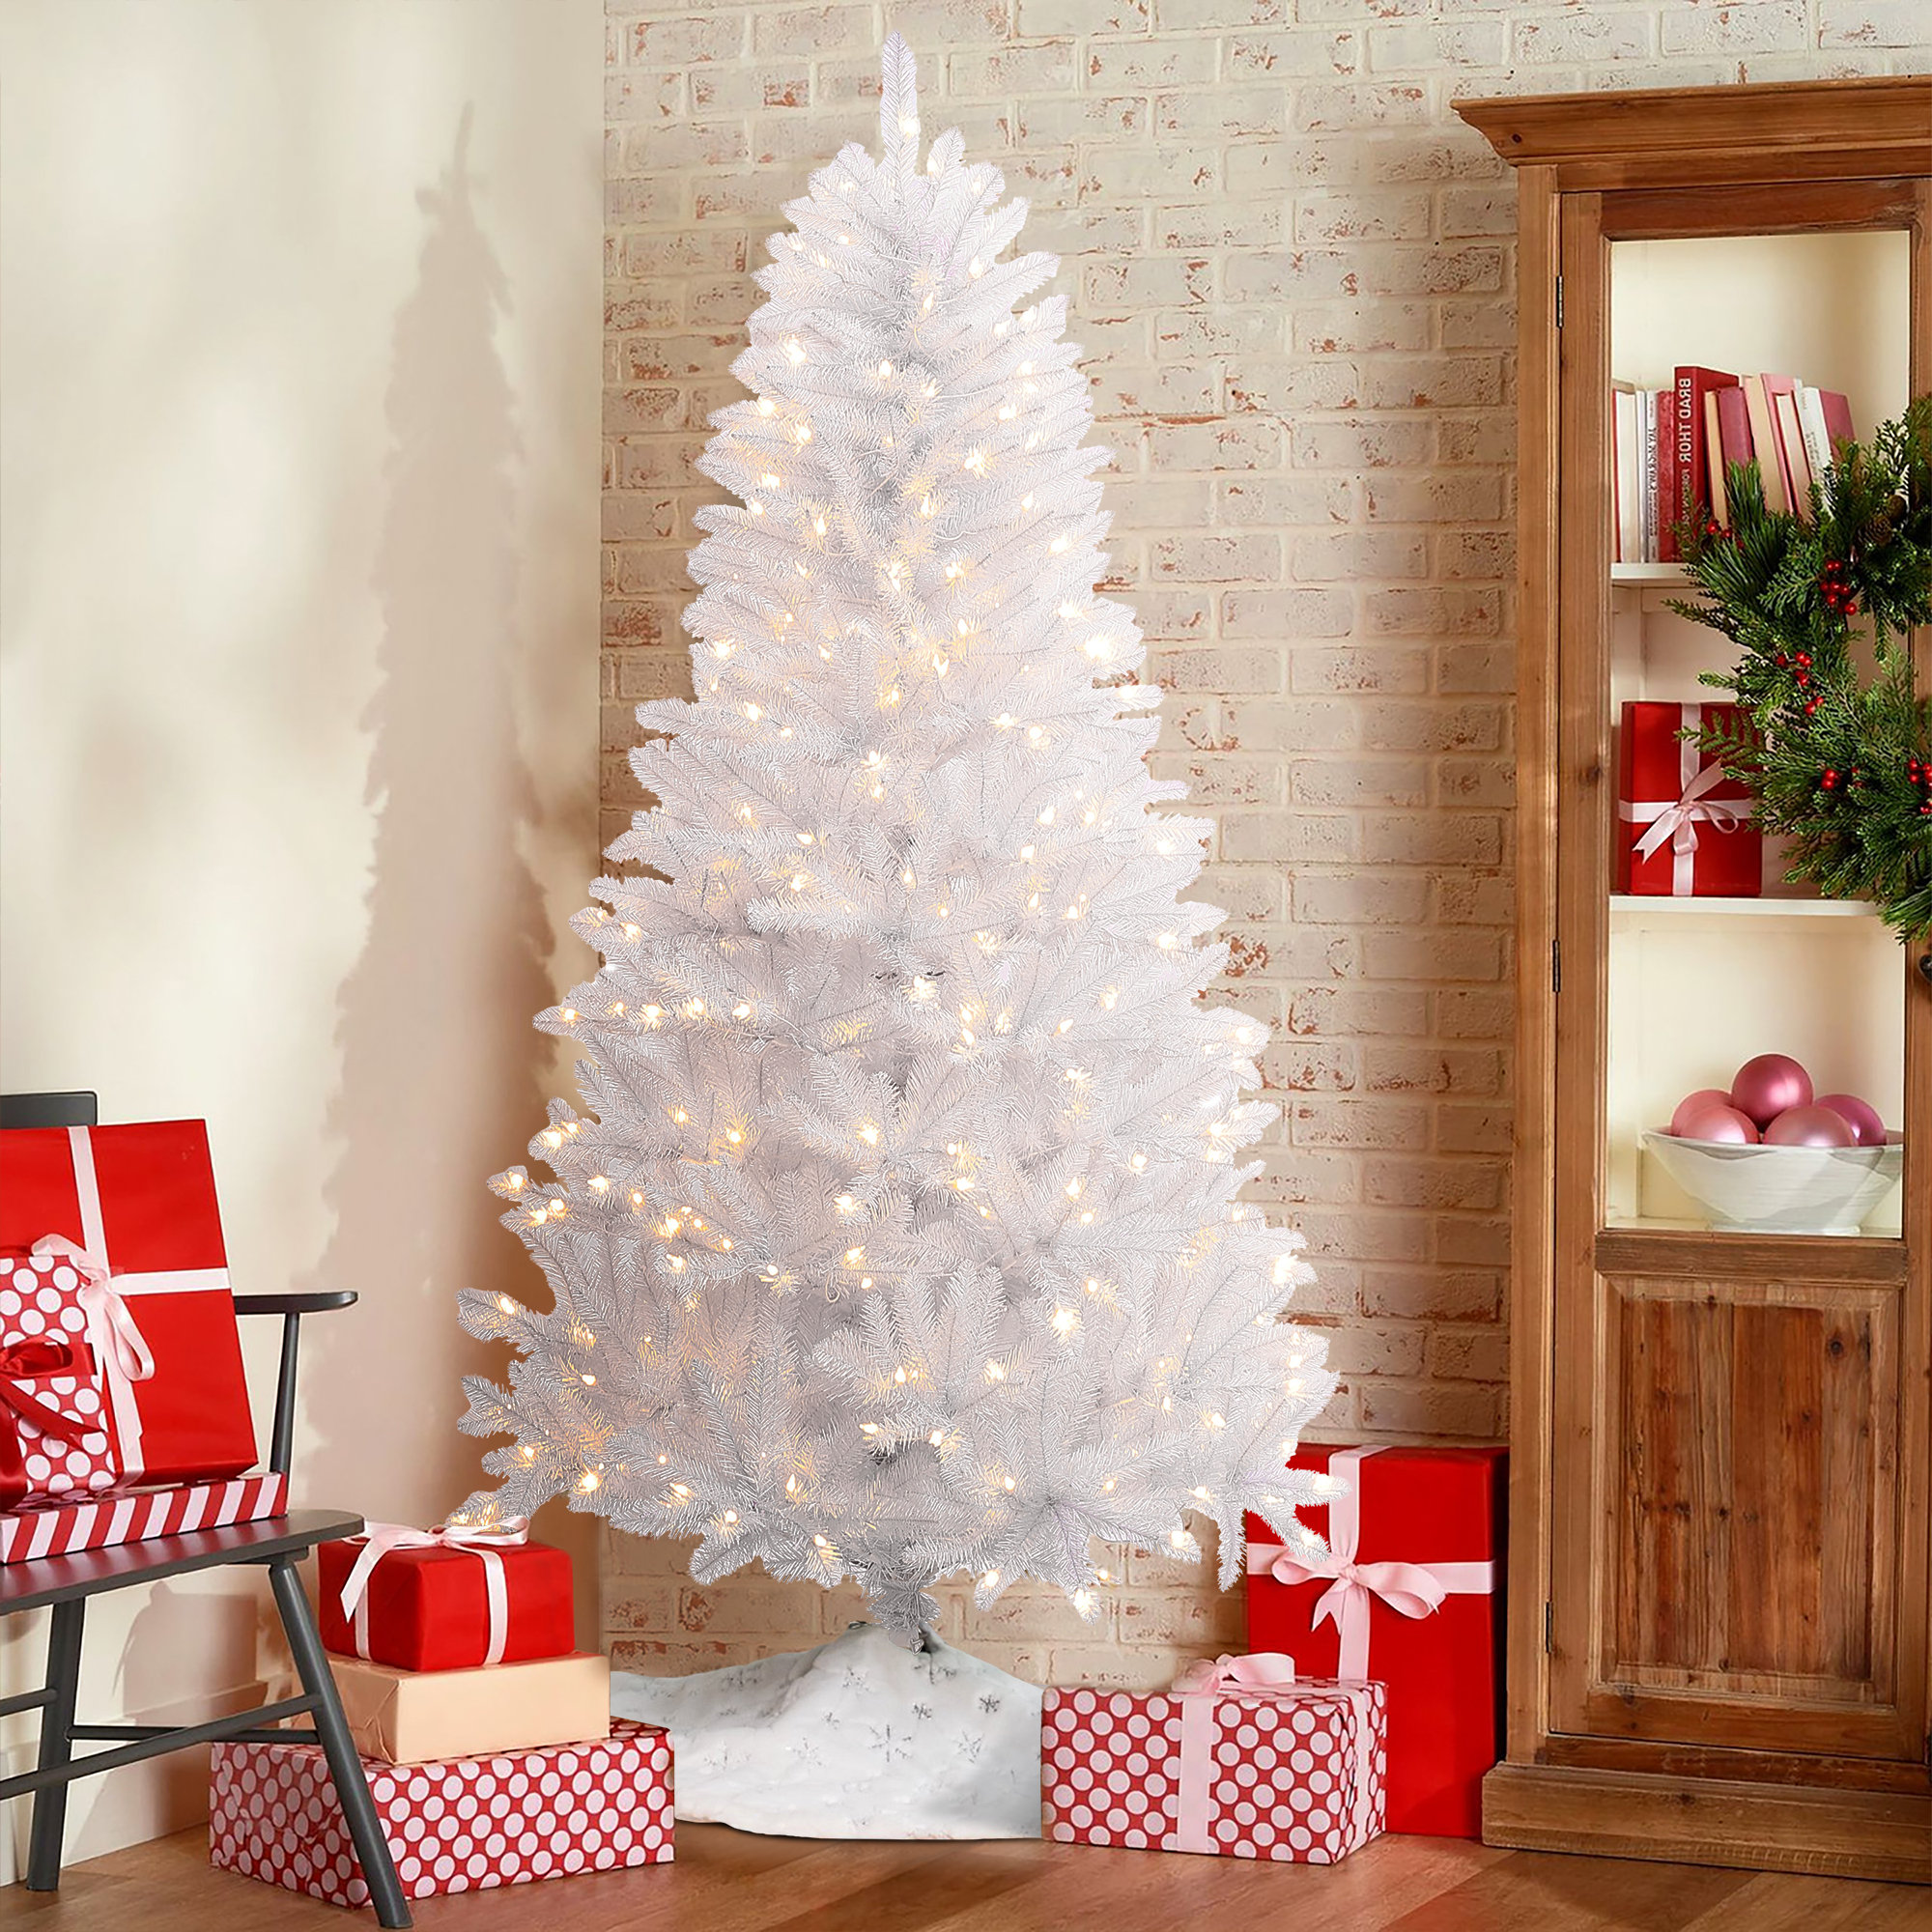 https://assets.wfcdn.com/im/01331440/compr-r85/2500/250044674/havyn-65-lighted-fir-christmas-tree.jpg